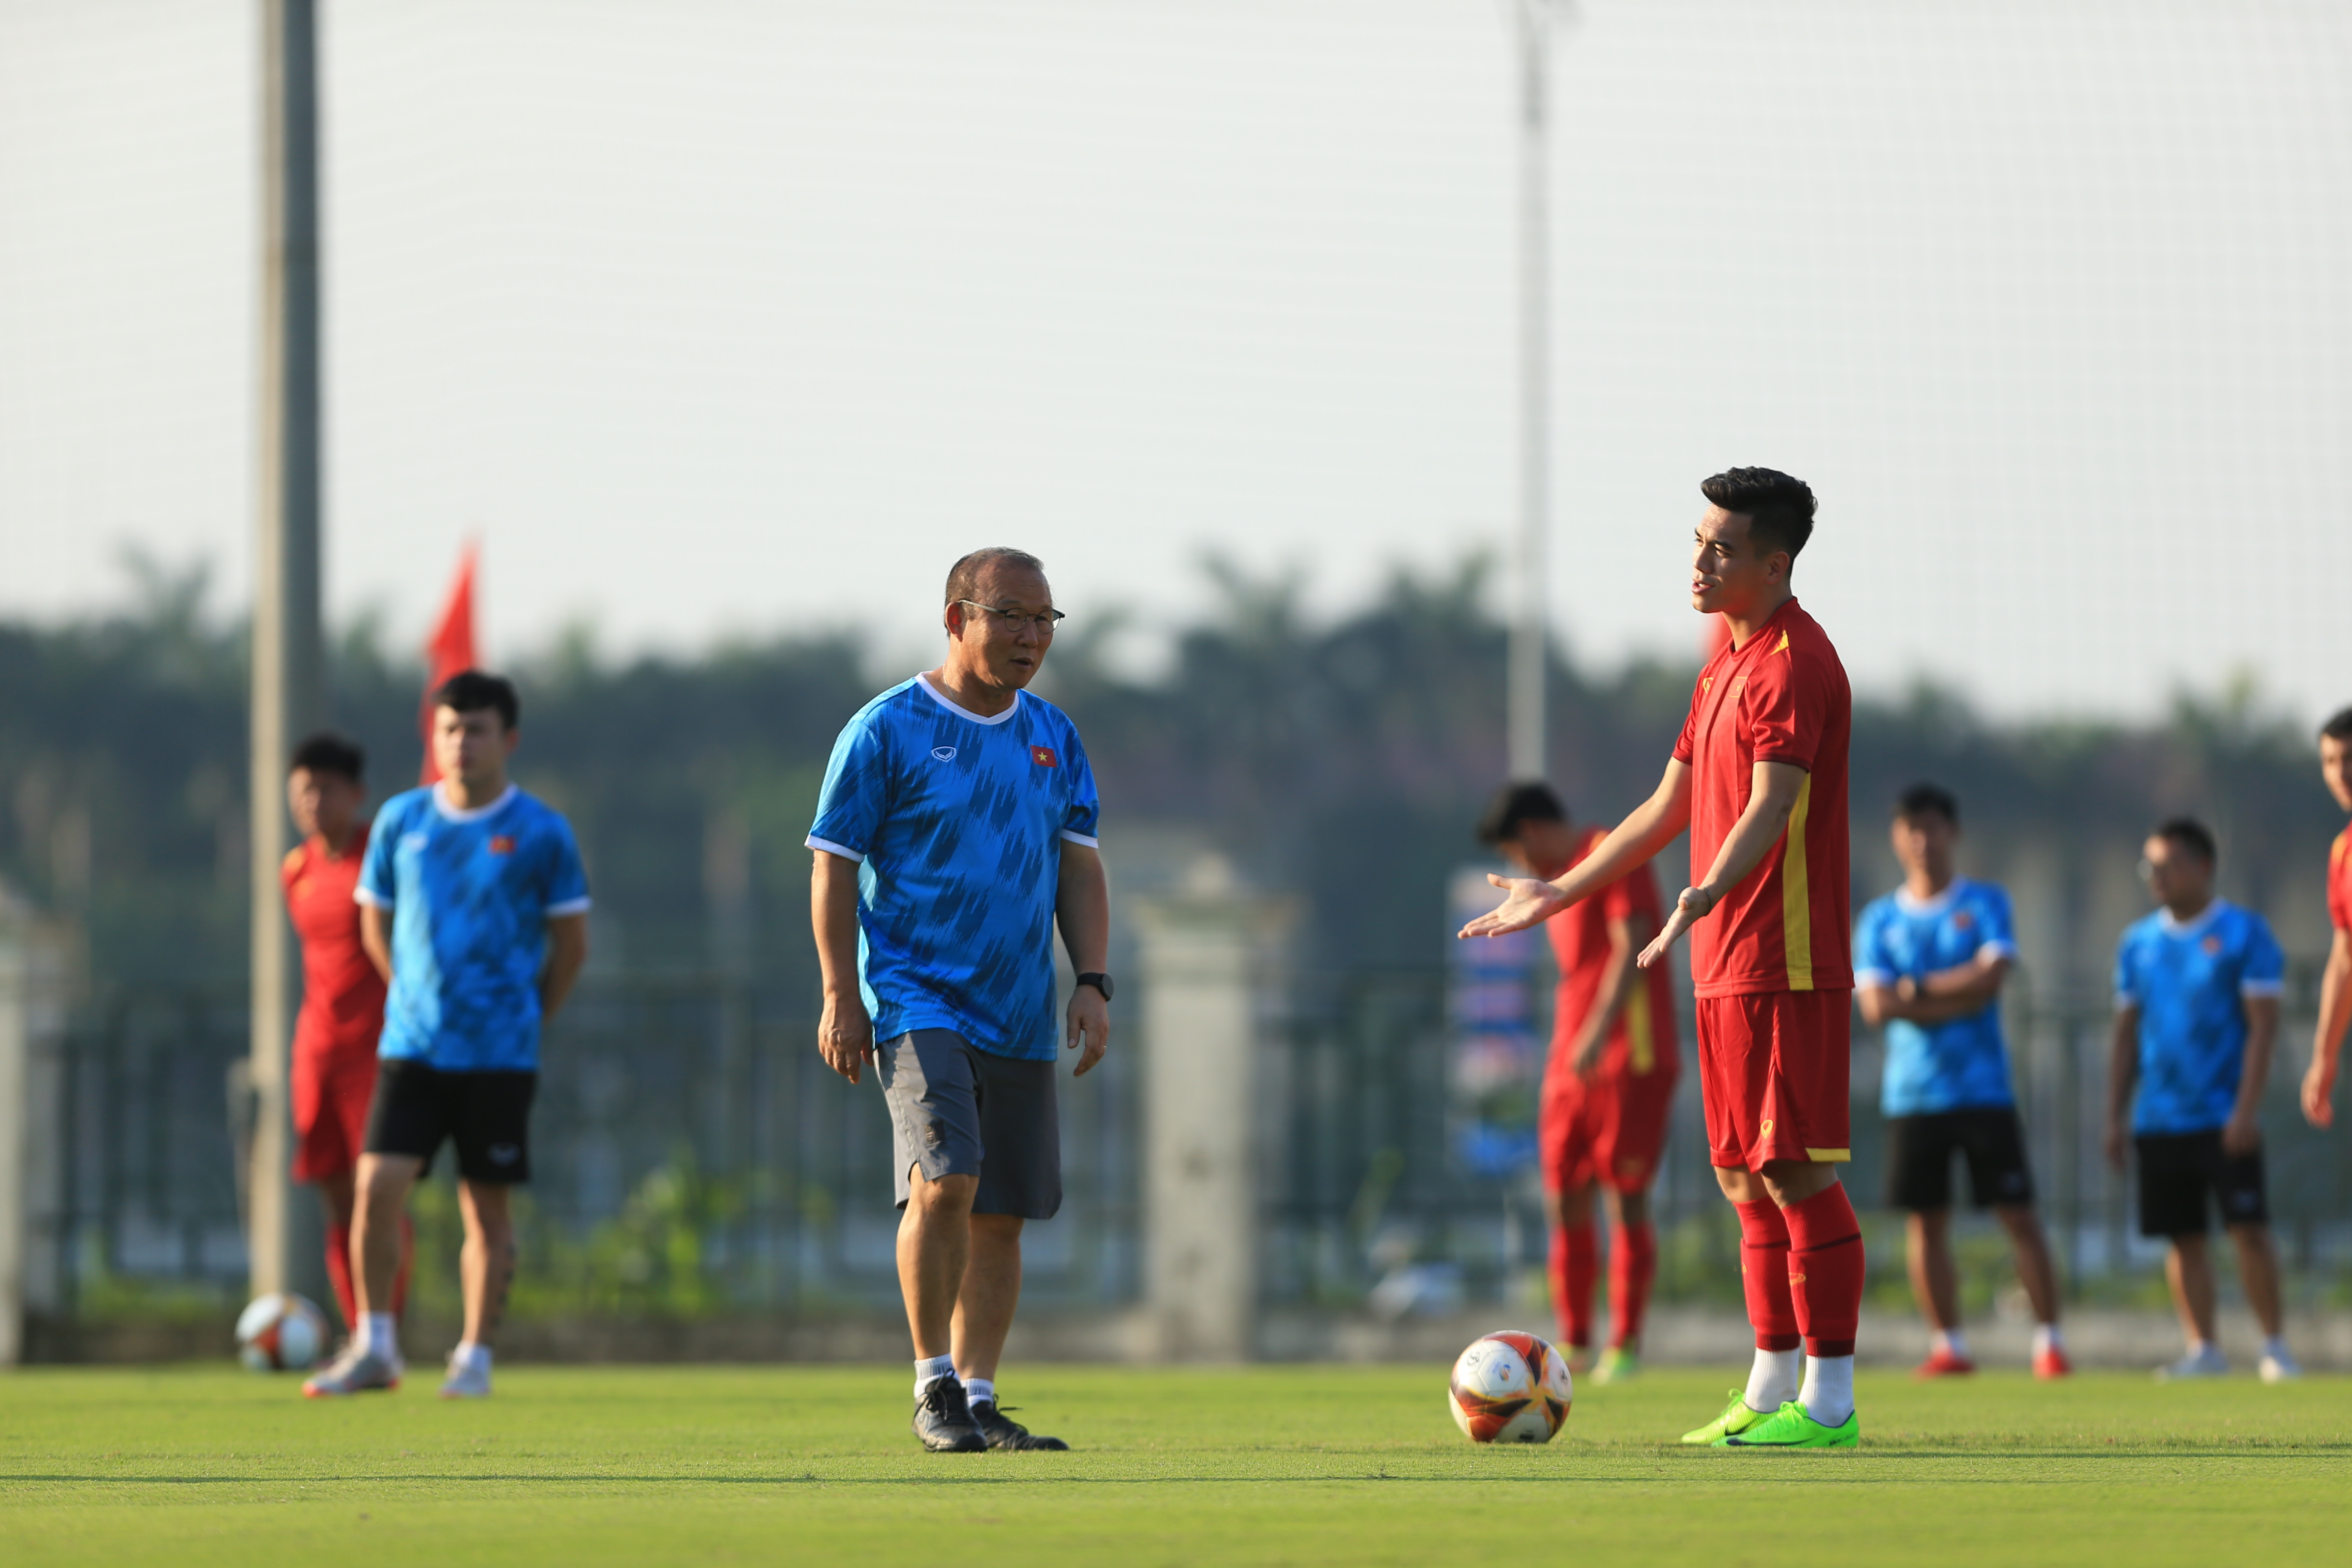 HLV Park Hang Seo sẽ phải tính toán người thay thế nếu như Tiến Linh không có được thể trạng tốt nhất để ra sân trận mở màn gặp U23 Indonesia - Ảnh: Đức Cường 